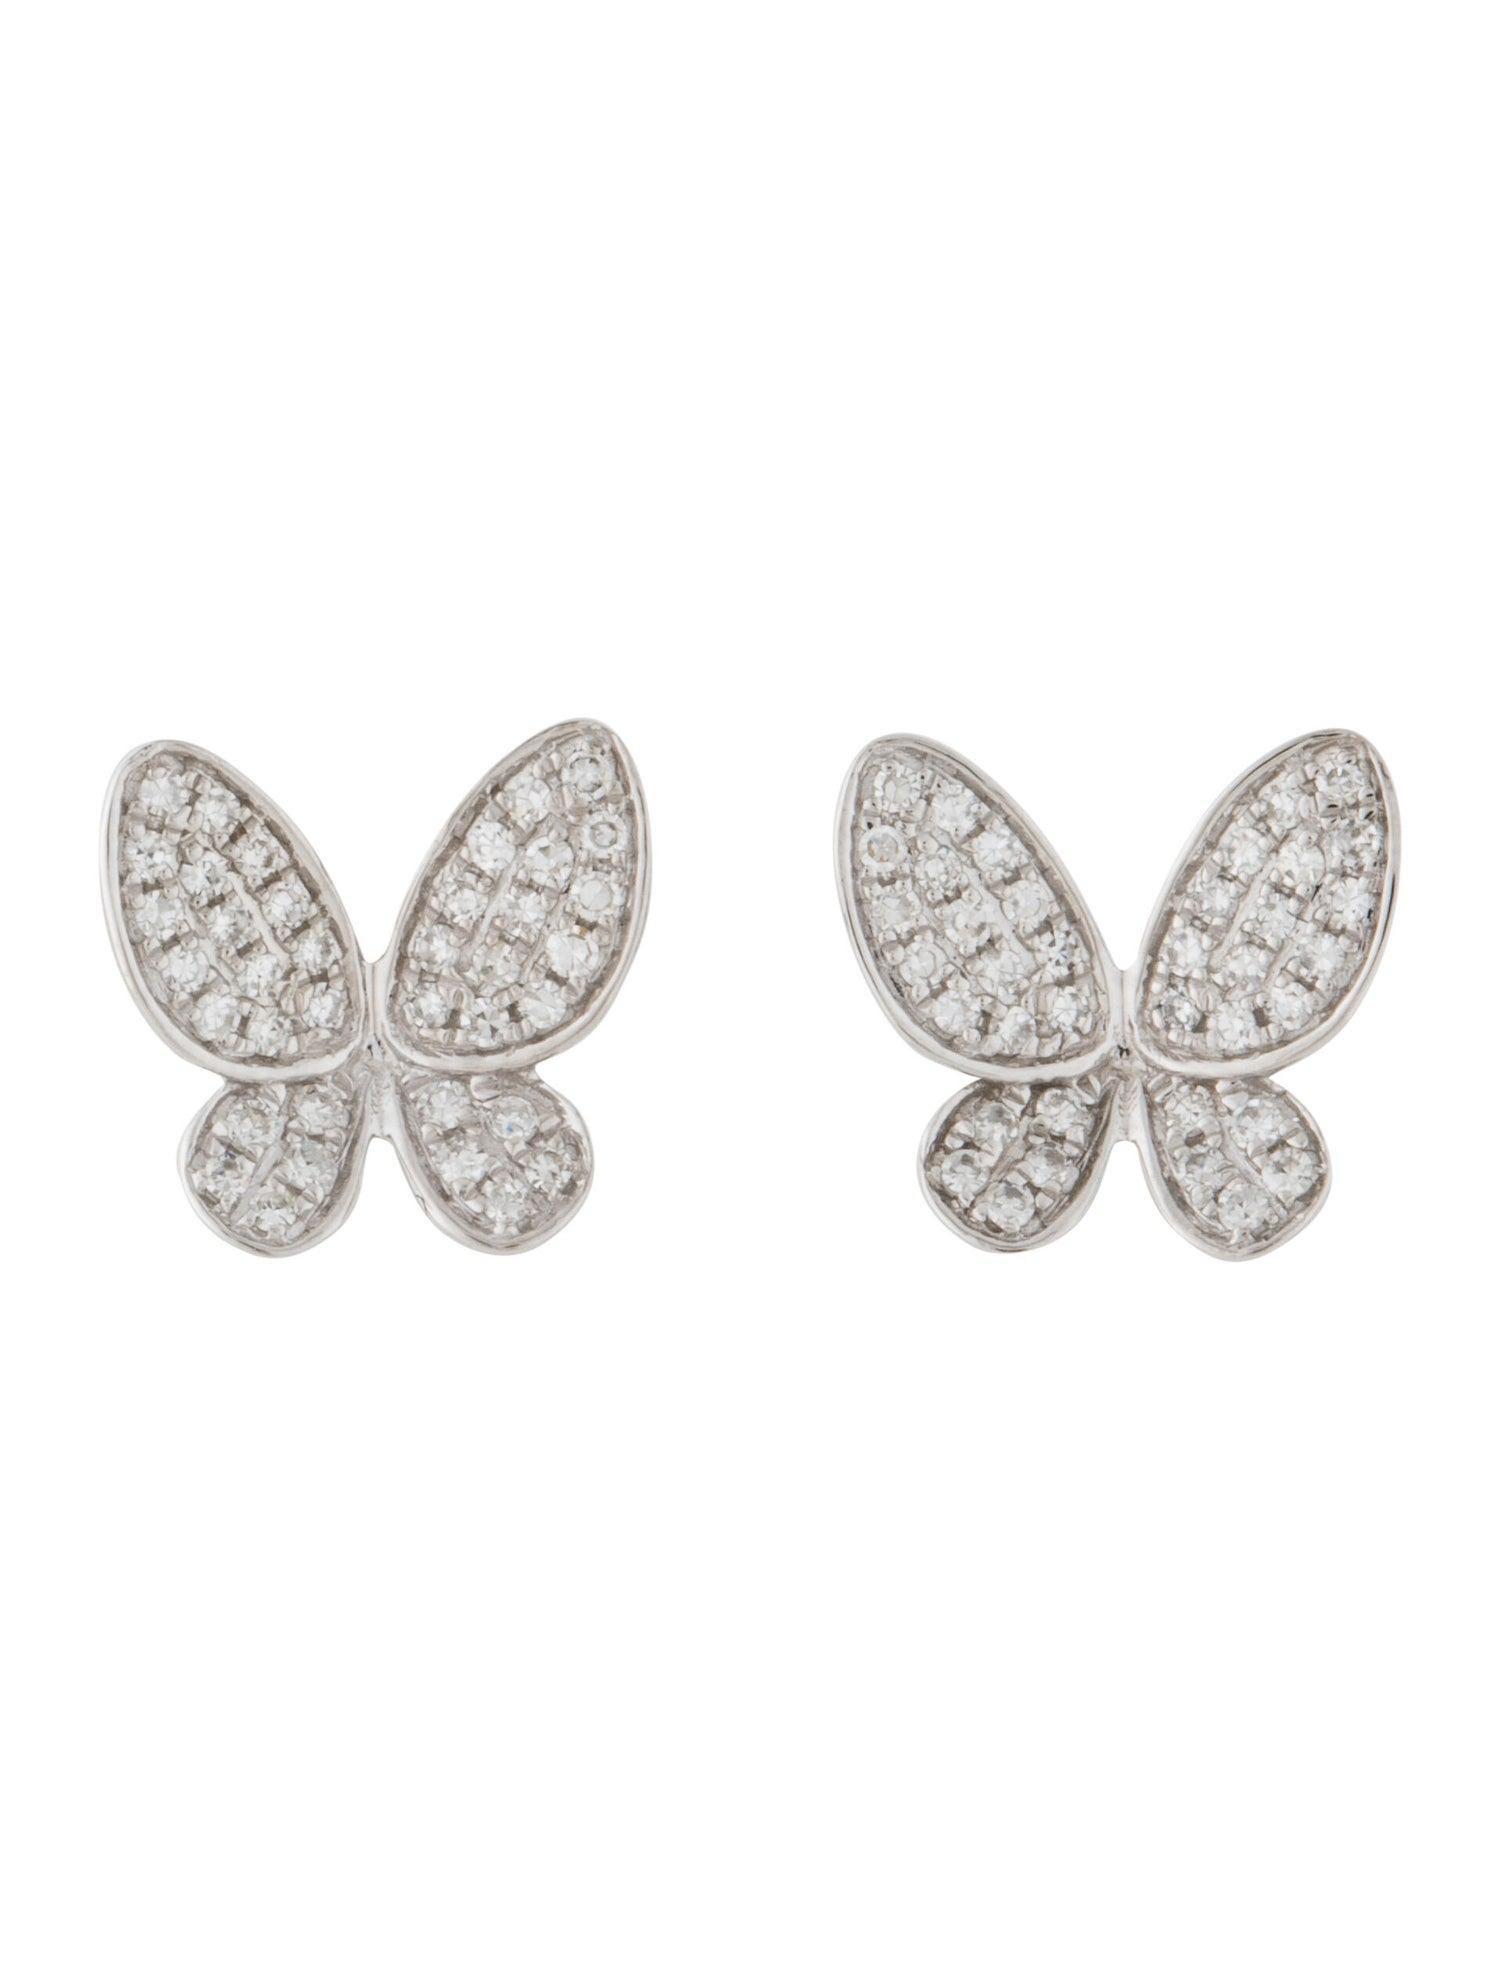 14k gold butterfly earrings